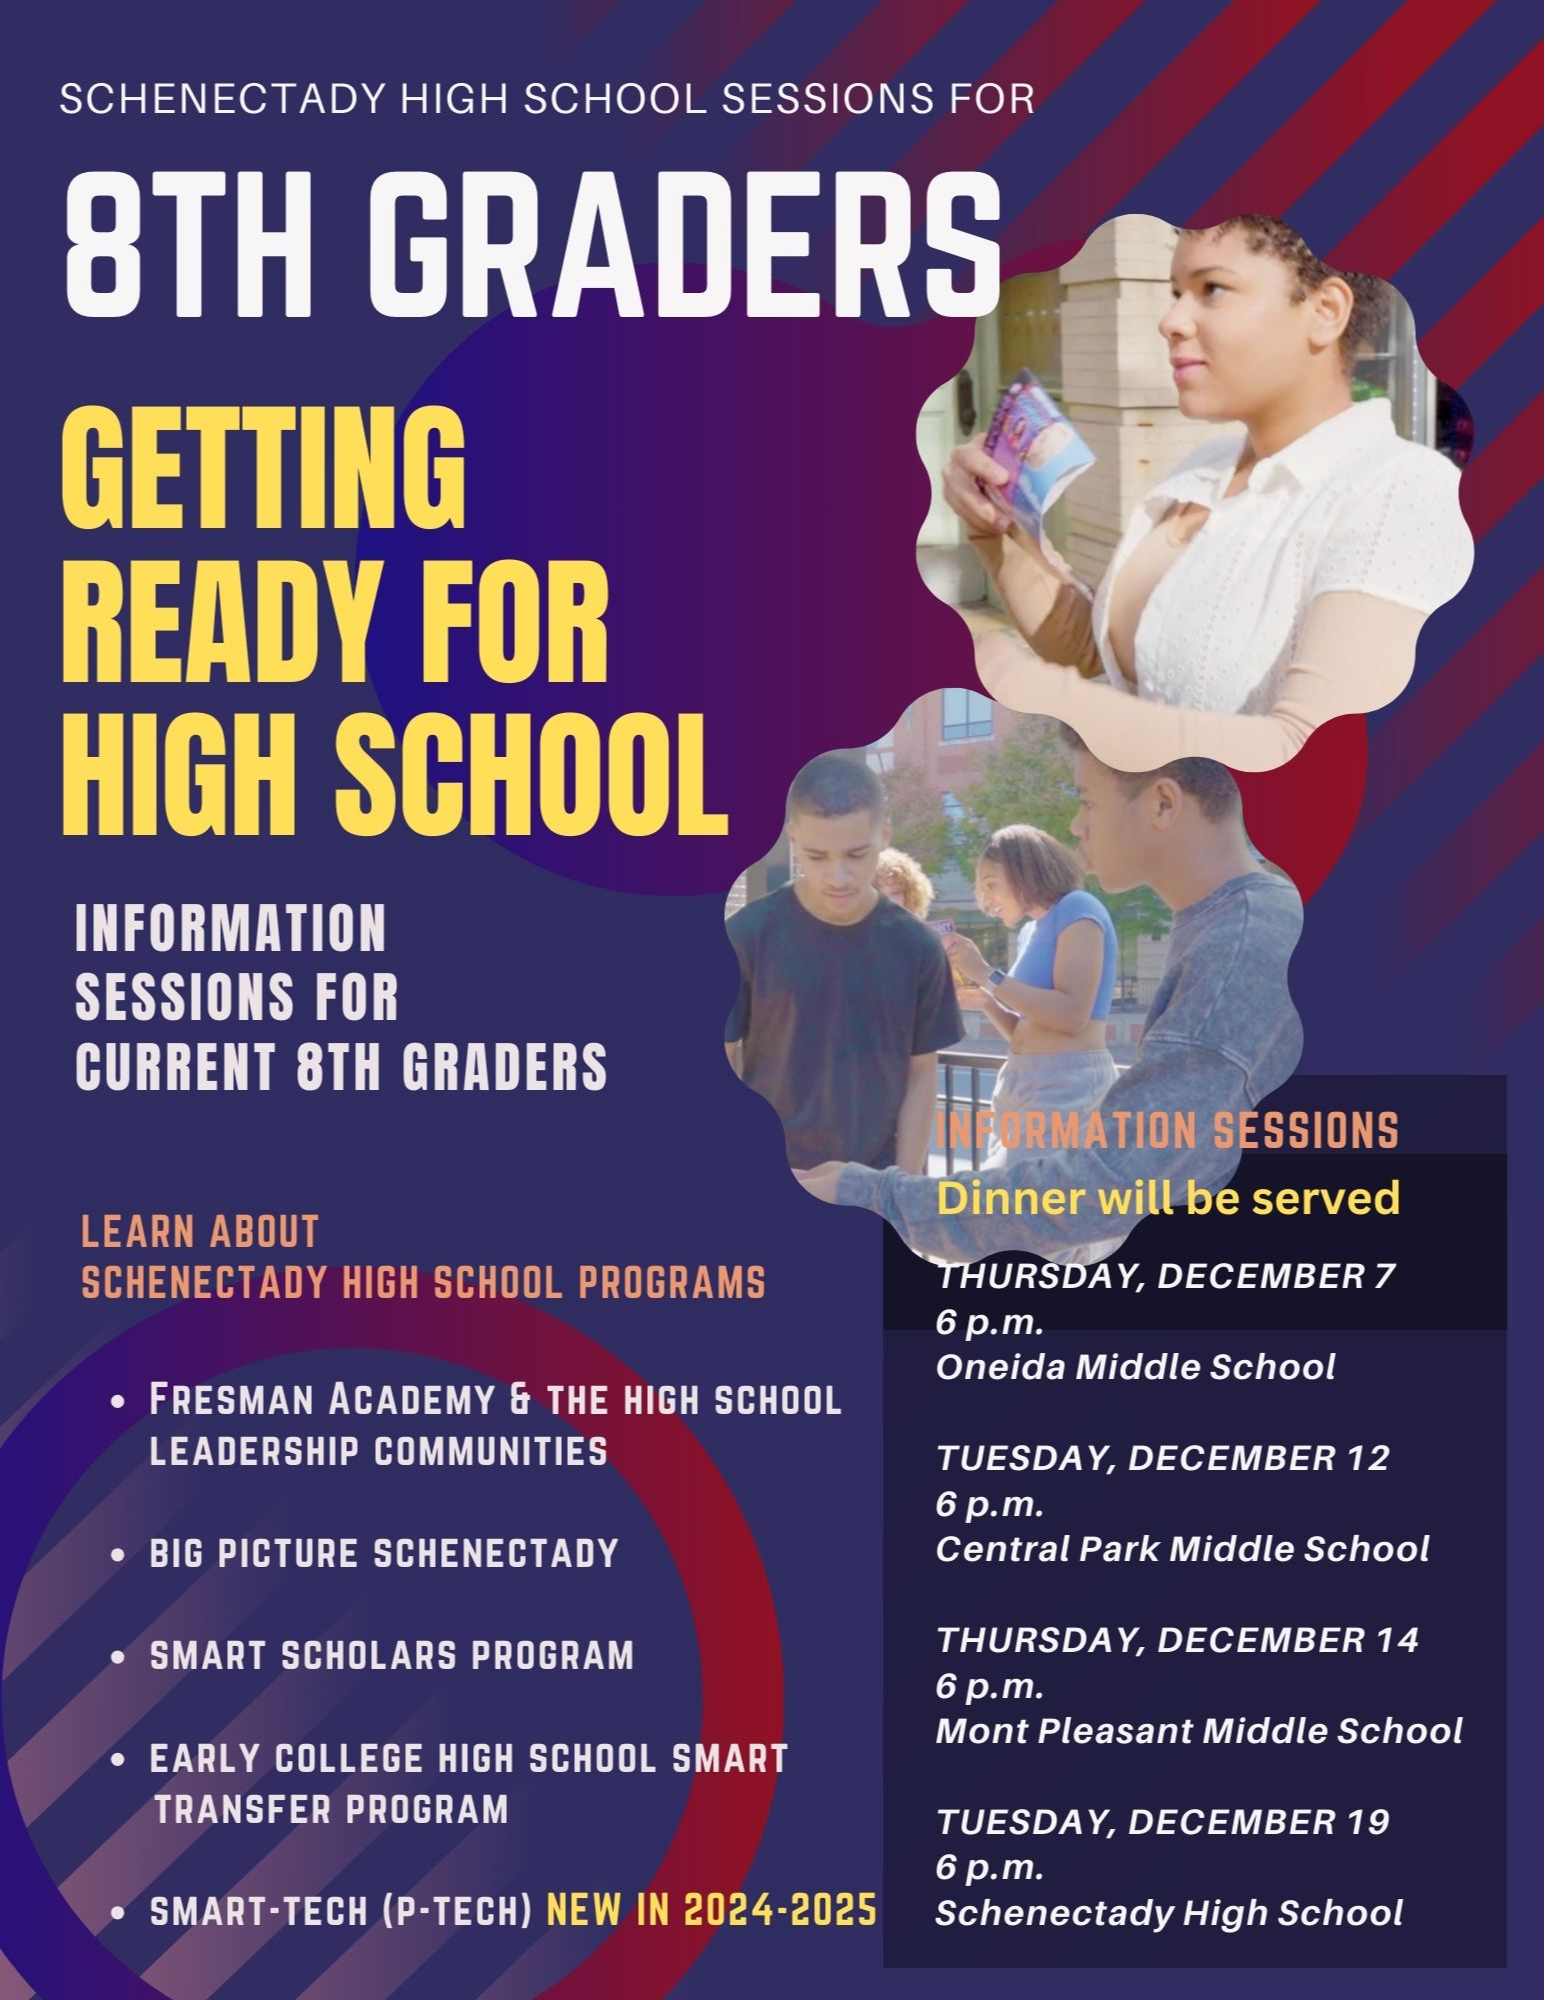 8th Grade Flyer regarding Information Sessions